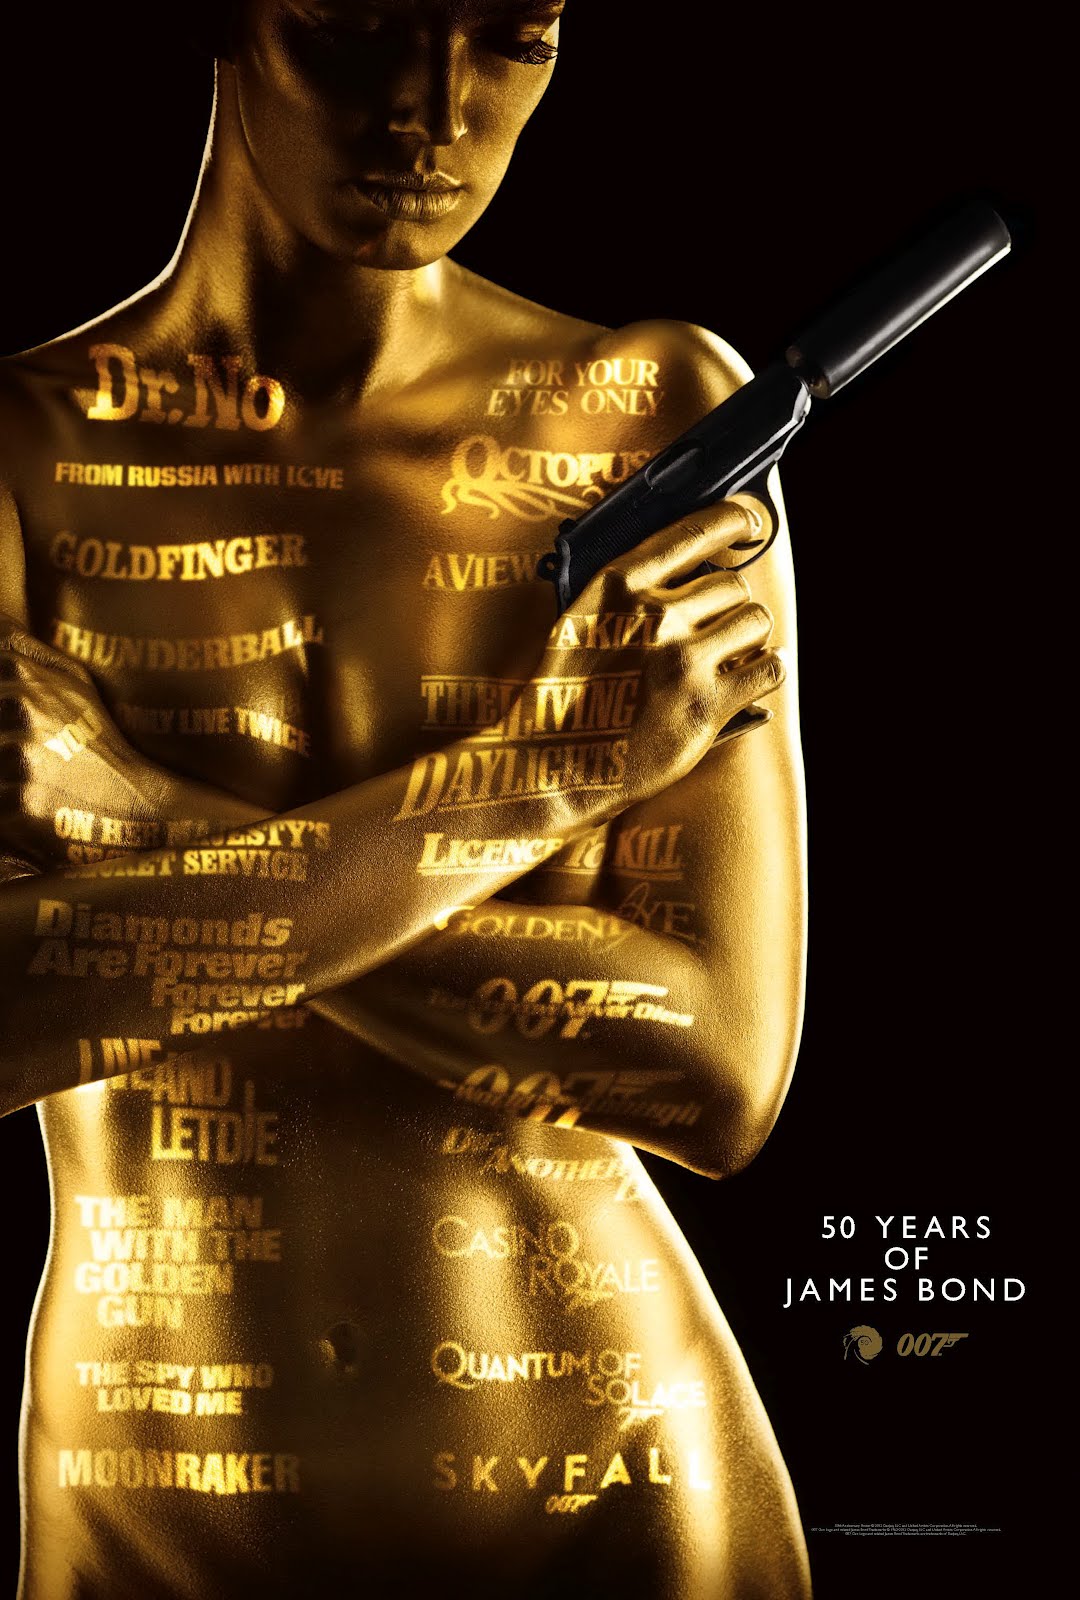 http://4.bp.blogspot.com/-cHmrYp6_fyo/T5IzUIGt7eI/AAAAAAAAIS0/R-hSD_3i2ho/s1600/James_Bond_50th_Anniversary_OS_poster_golden_a_50_years_of_007.jpg